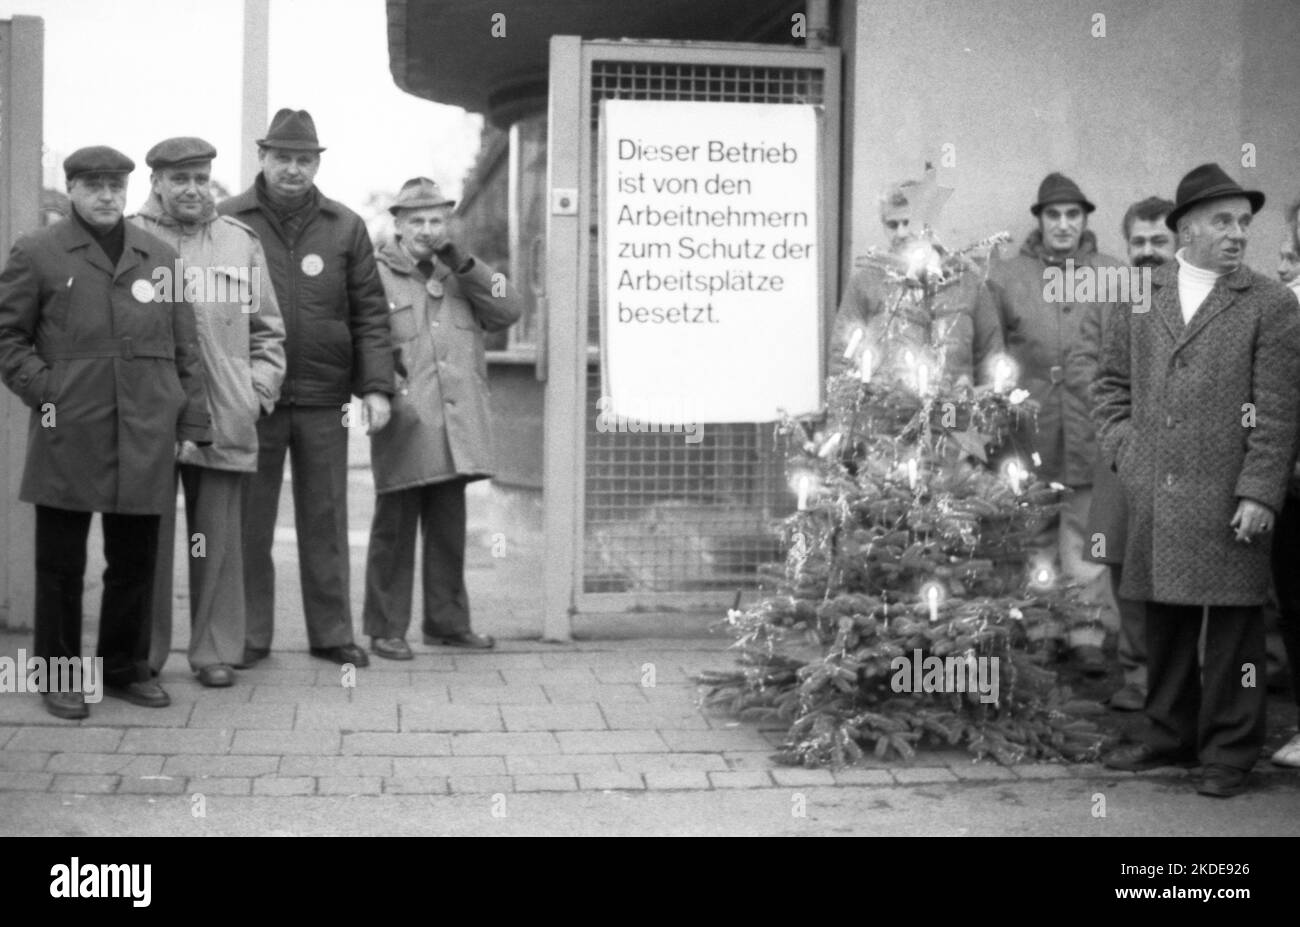 Preoccupata per il lavoro, i lavoratori e i dipendenti occupavano la loro azienda, Enke AG a Kassel, nel 1982, durante il periodo pre-Natale, in Germania Foto Stock